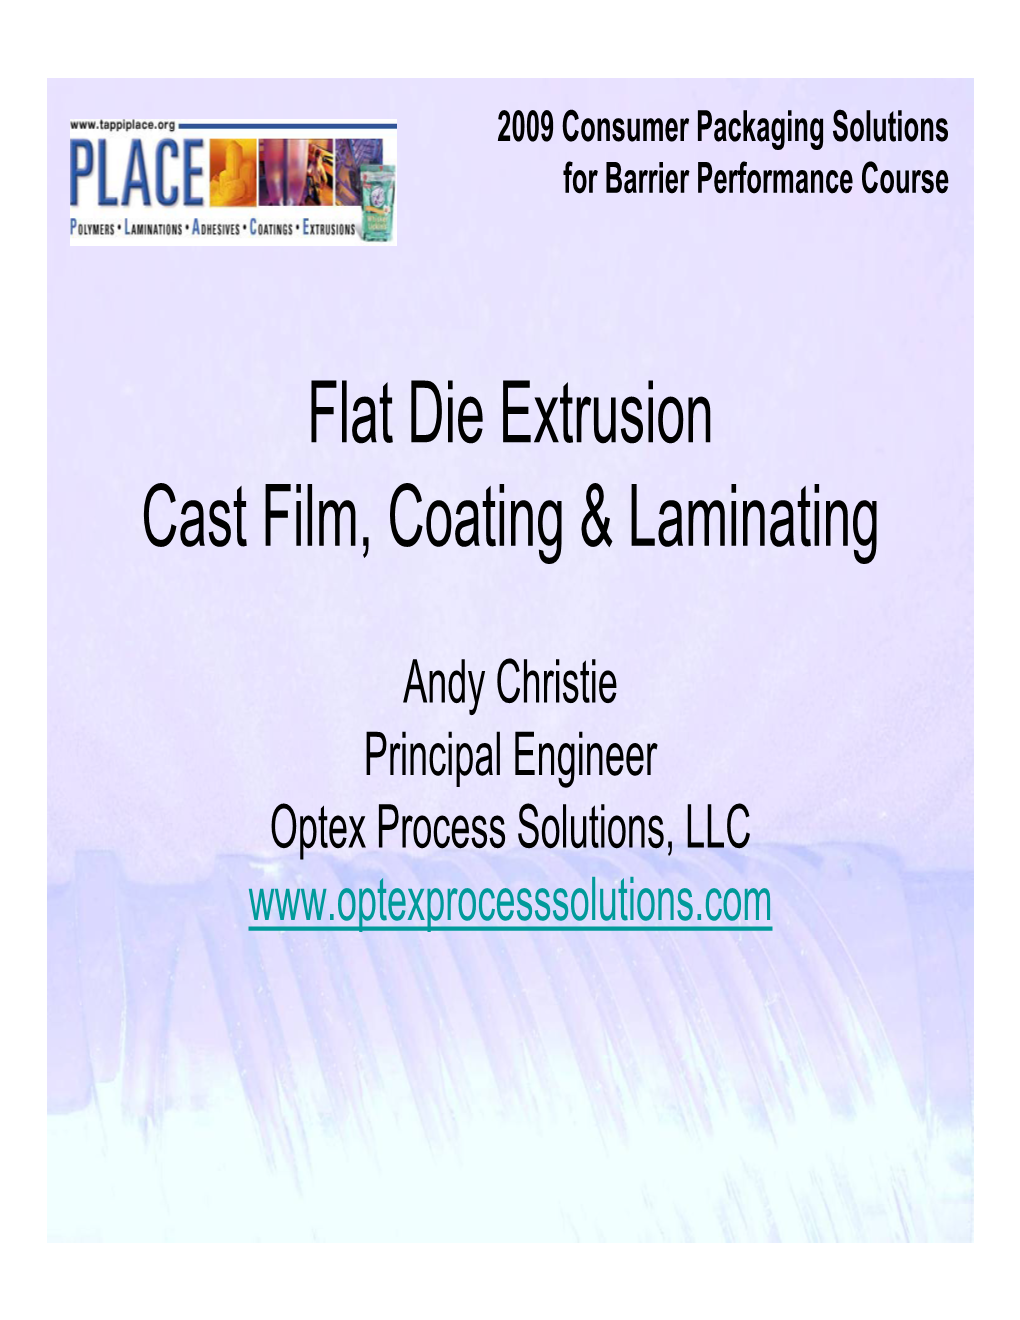 Flat Die Extrusion Cast Film, Coating & Laminating